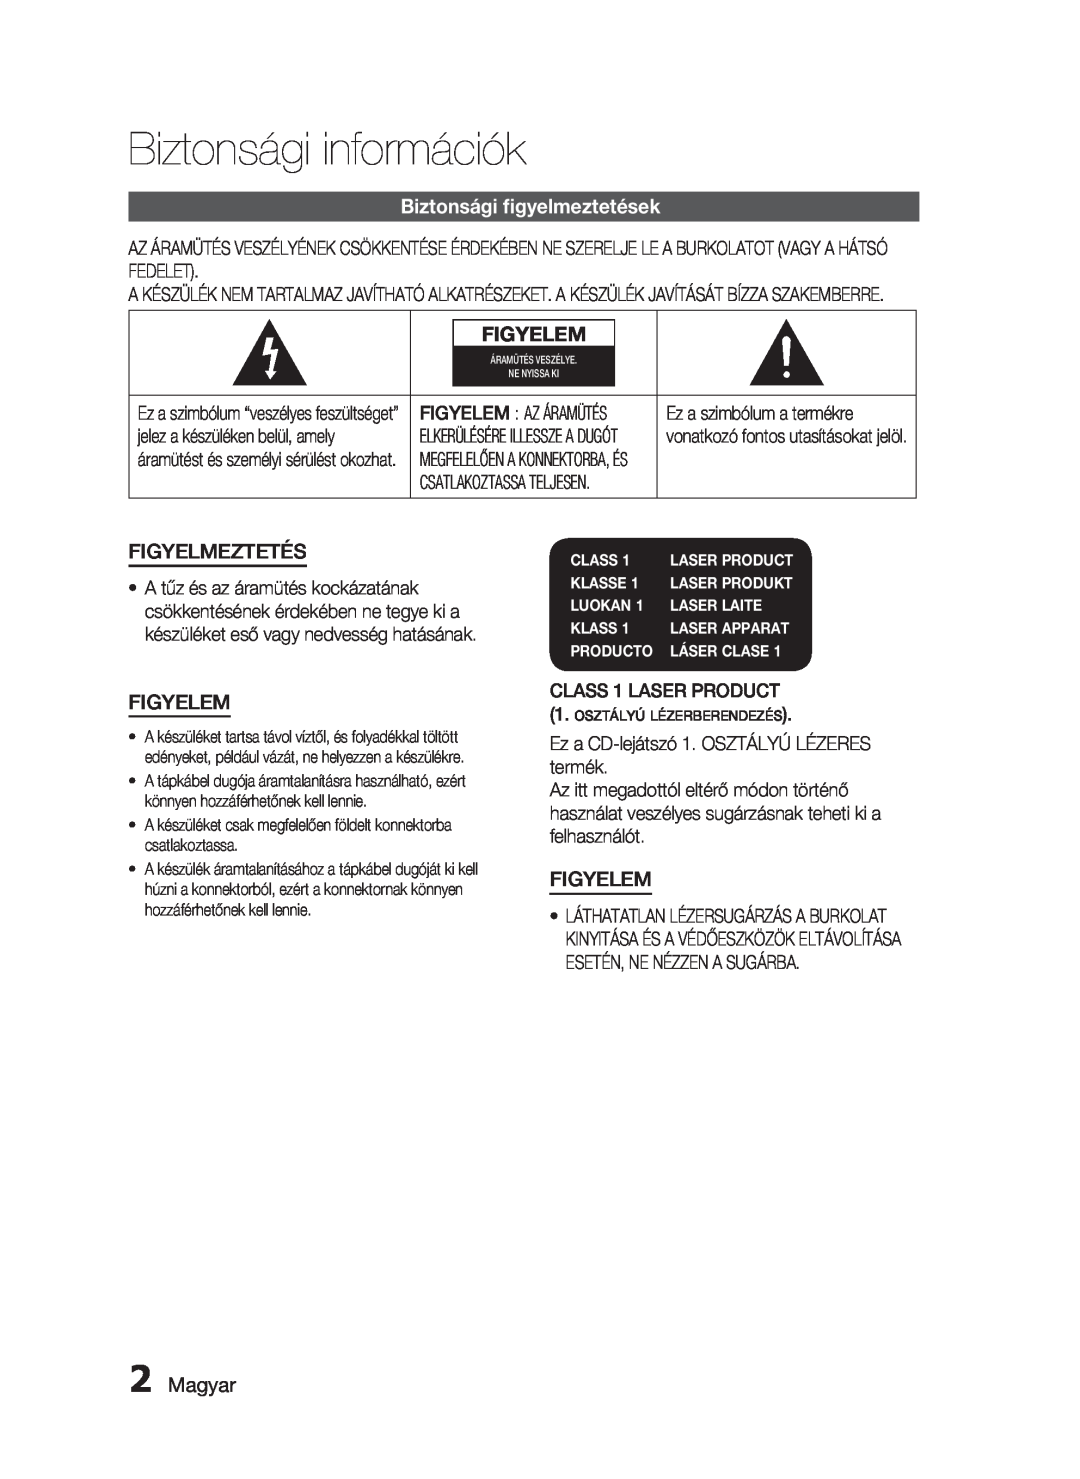 Samsung HT-C5900/XEF Biztonsági információk, Biztonsági ﬁgyelmeztetések, Figyelem, Figyelmeztetés, Magyar, Class, Klasse 